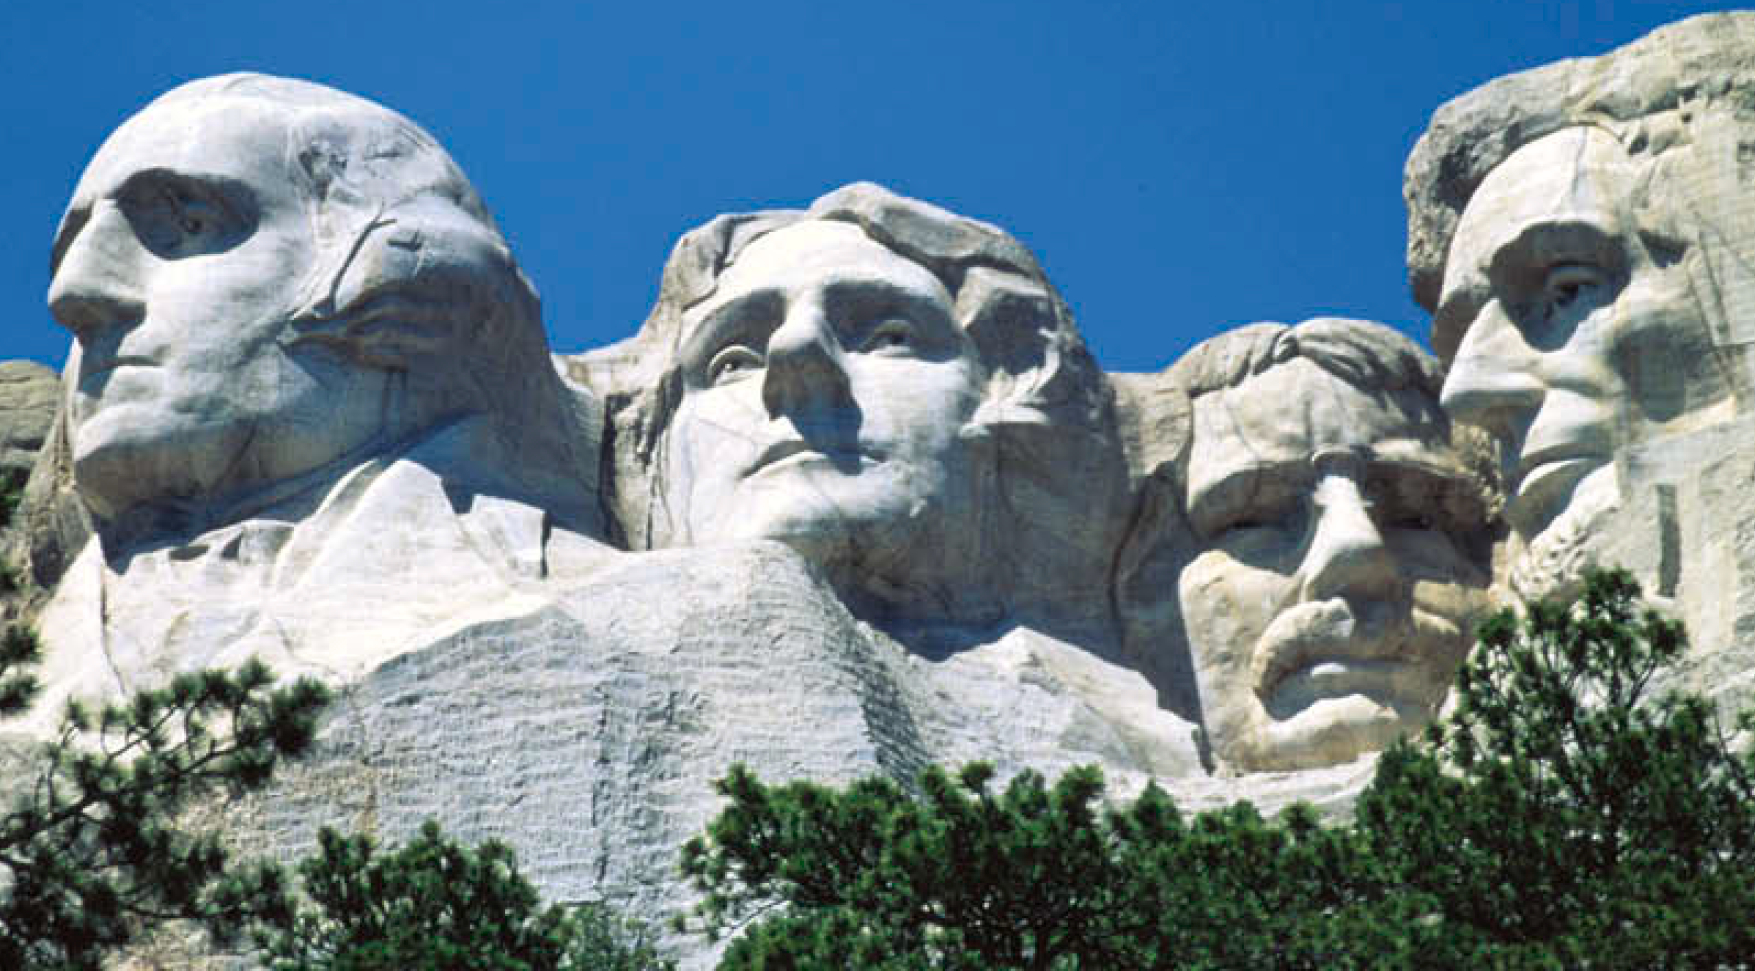 Národní památník Mount Rushmore | Mount Rushmore National Memorial